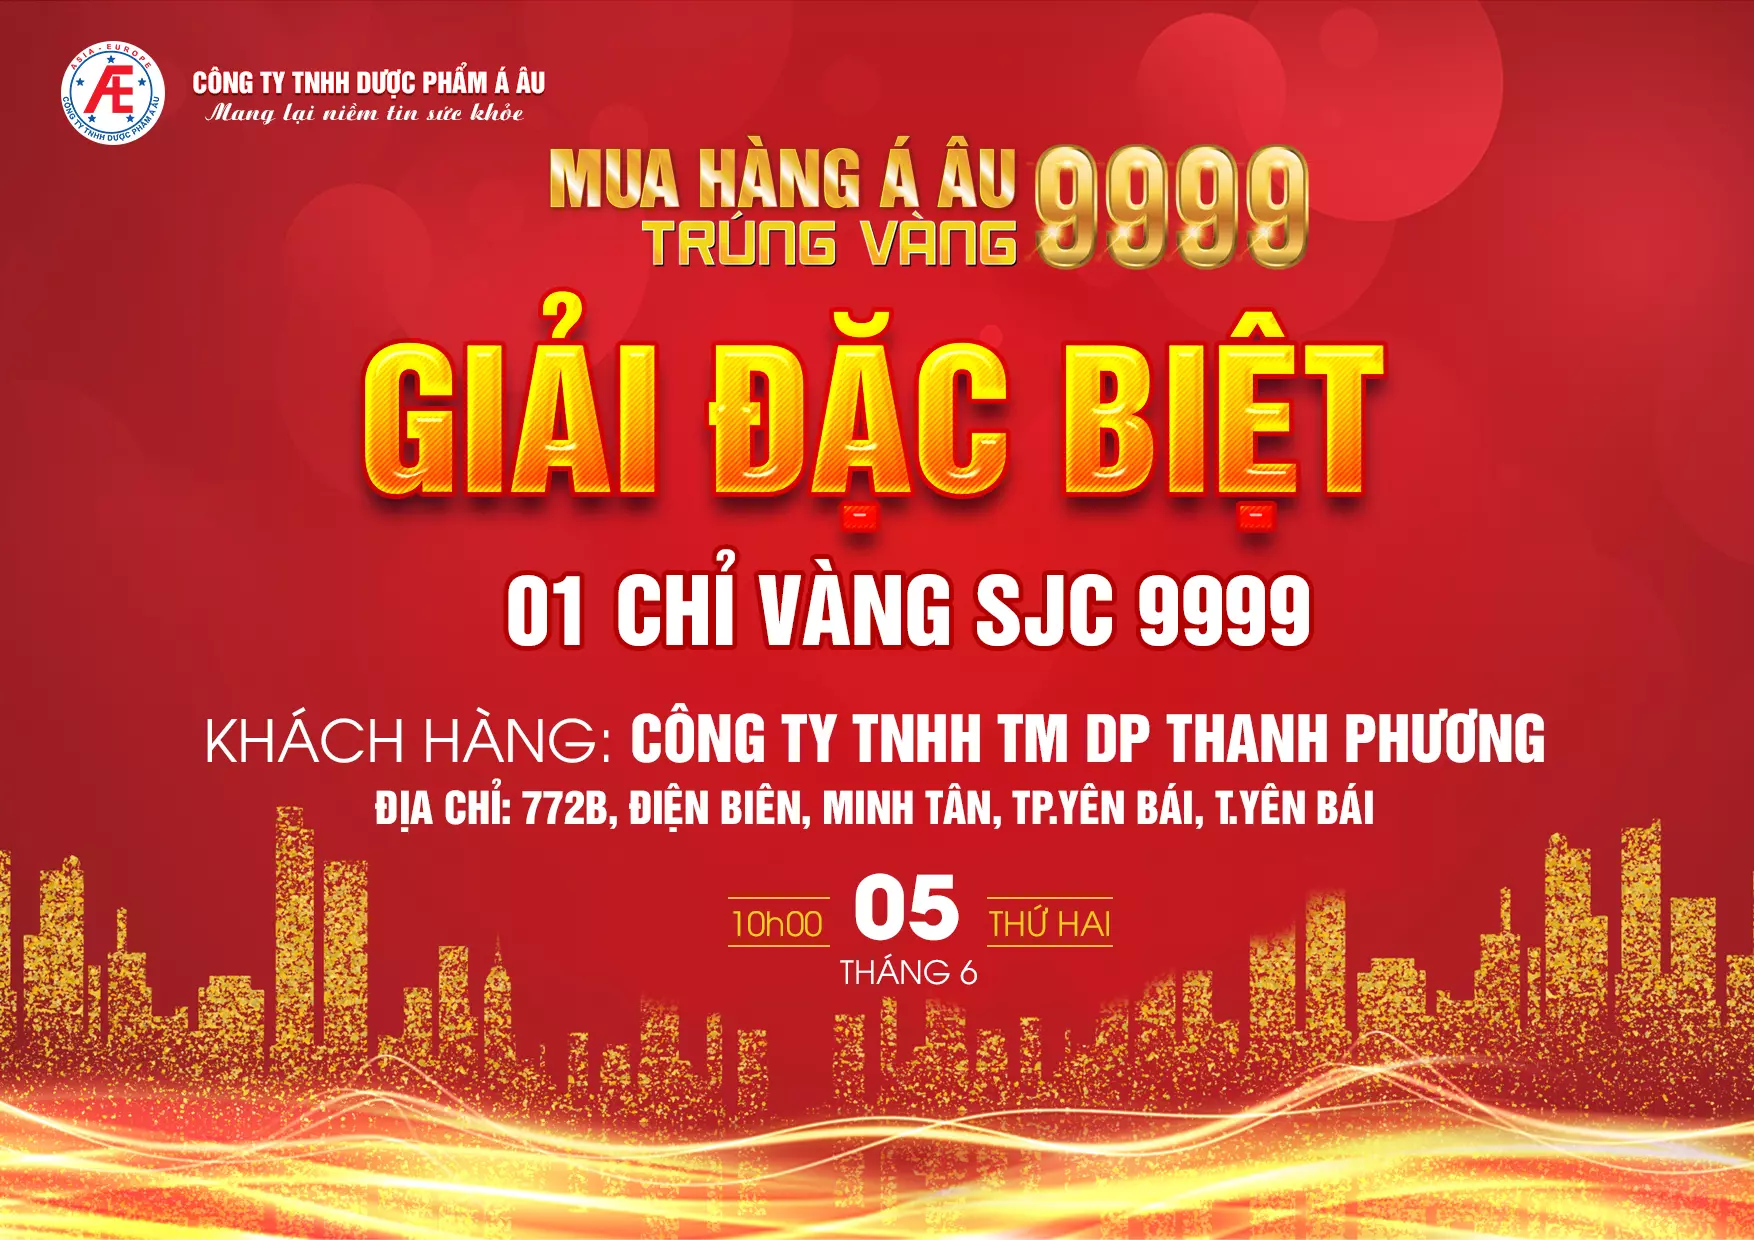 Xin chúc mừng Công ty TNHH TM DP Thanh Phương là đơn vị cuối cùng đã may mắn trúng giải đặc biệt của chương trình